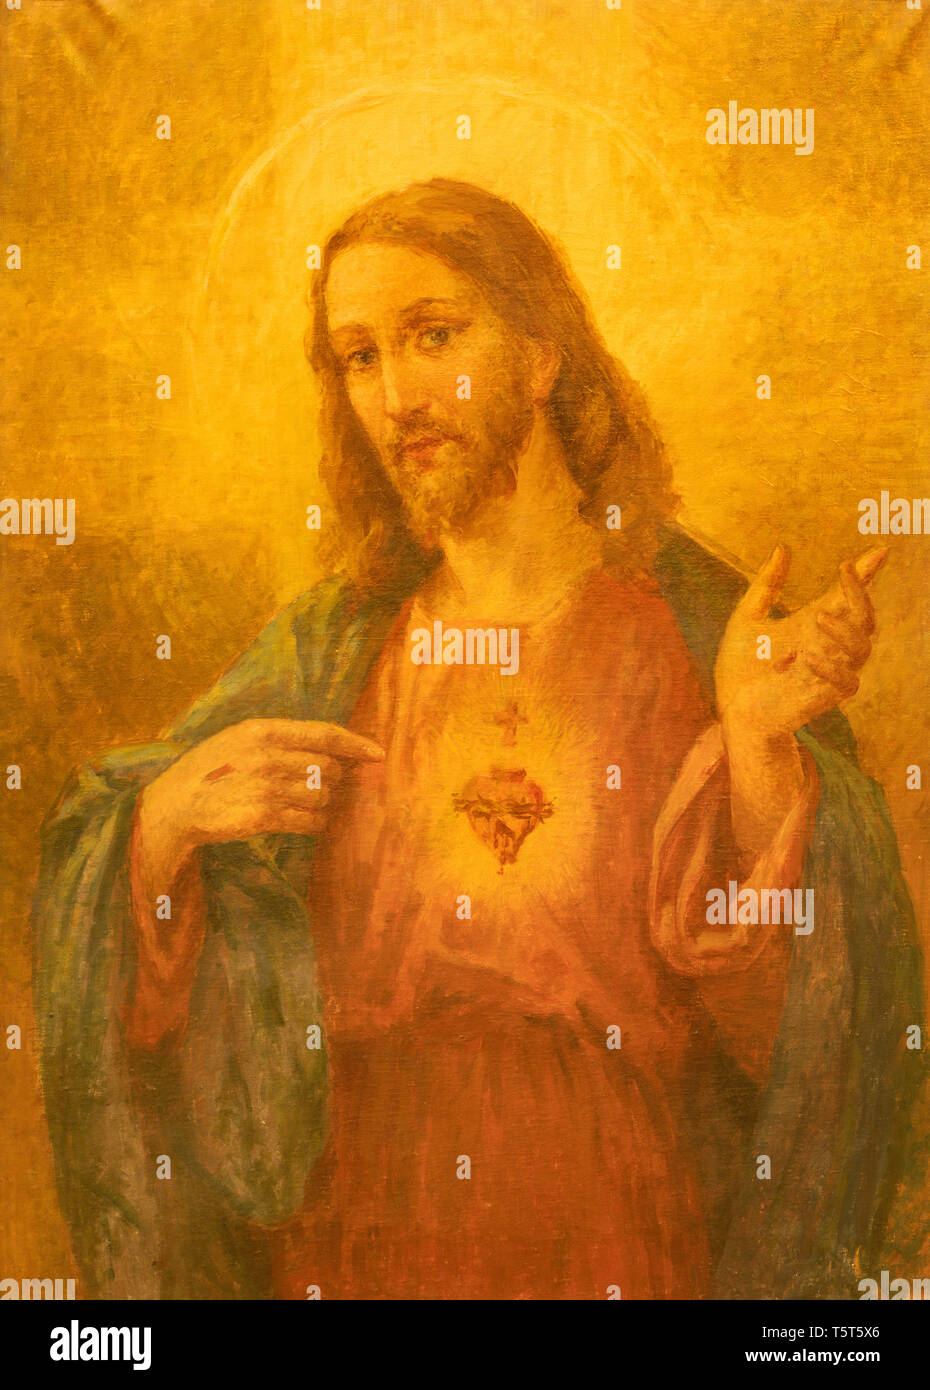 ACIREALE, ITALIE - 11 avril 2018 : la peinture de Cœur de Jésus Christ dans Duomo - Cattedrale di Maria Santissima Annunziata. Banque D'Images